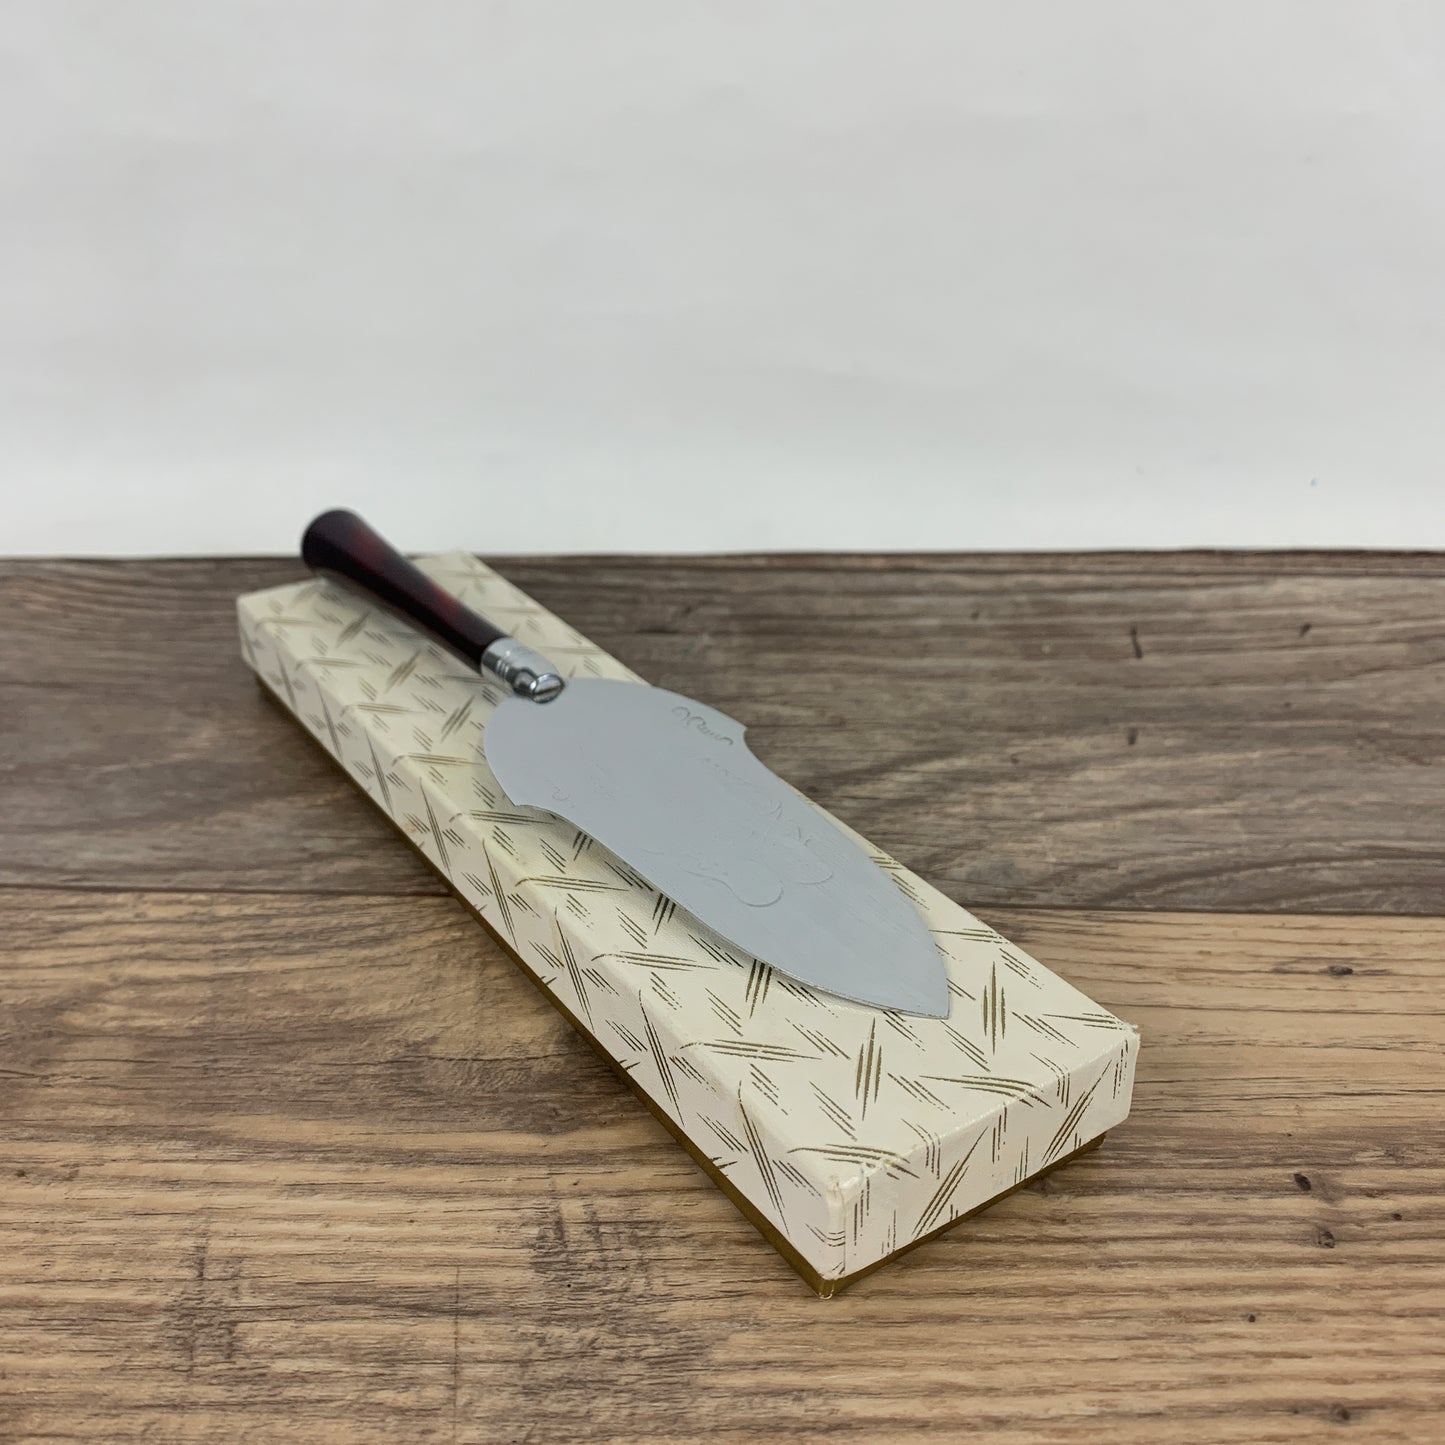 Metal Serving Knife with Decorative Handle, Vintage Cake Server